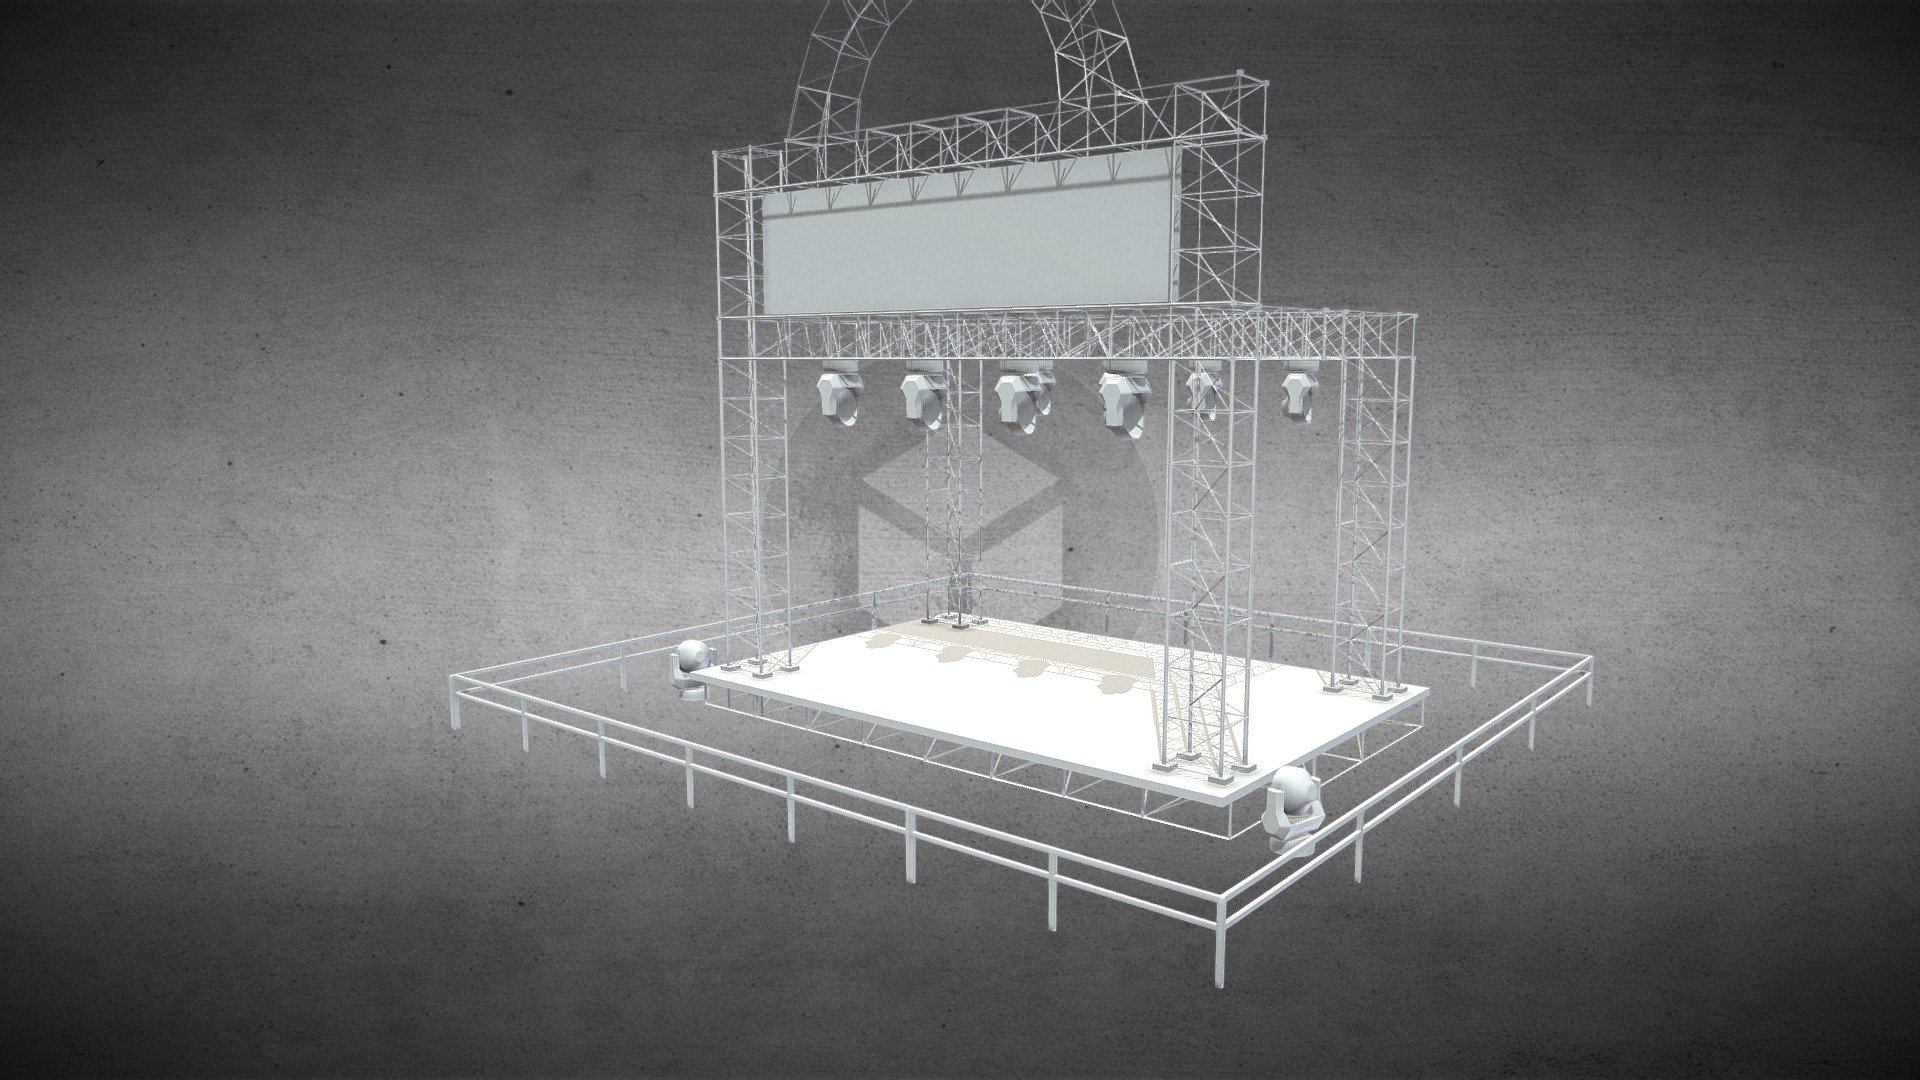 WIP Modelagem de um Palco para eventos baseado em palcos com BoxTruss.
Fog feita no Autodesk Maya.
Sem shaders ainda 3d model